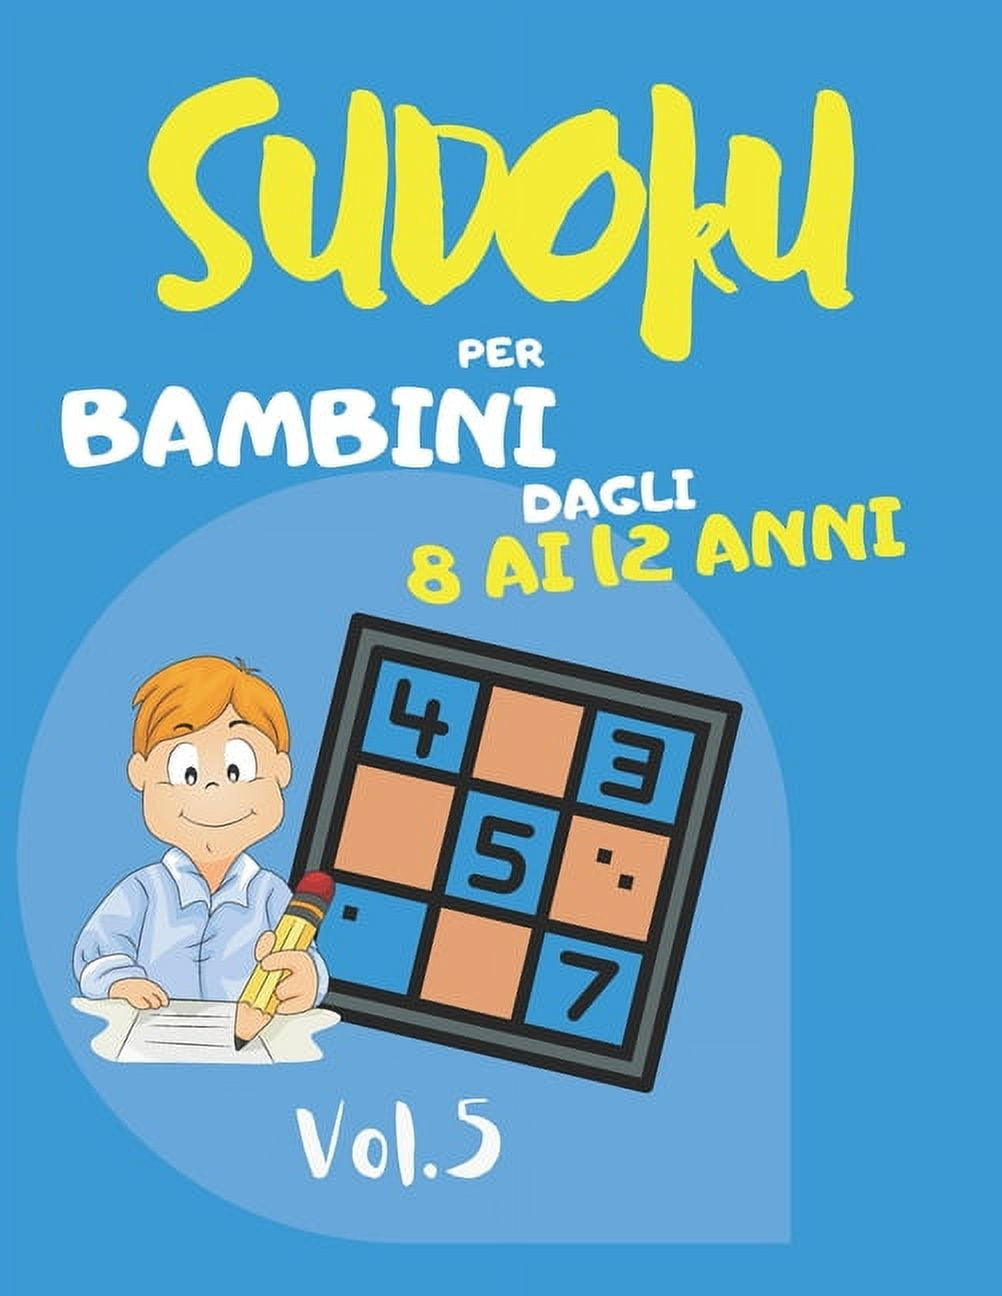 Sudoku: Sudoku per bambini dagli 8 ai 12 anni: Sudoku Big Book per gli  appassionati di Sudoku - Per bambini 8-12 anni e adulti - 300 griglie 9x9 -  Stampa grande 